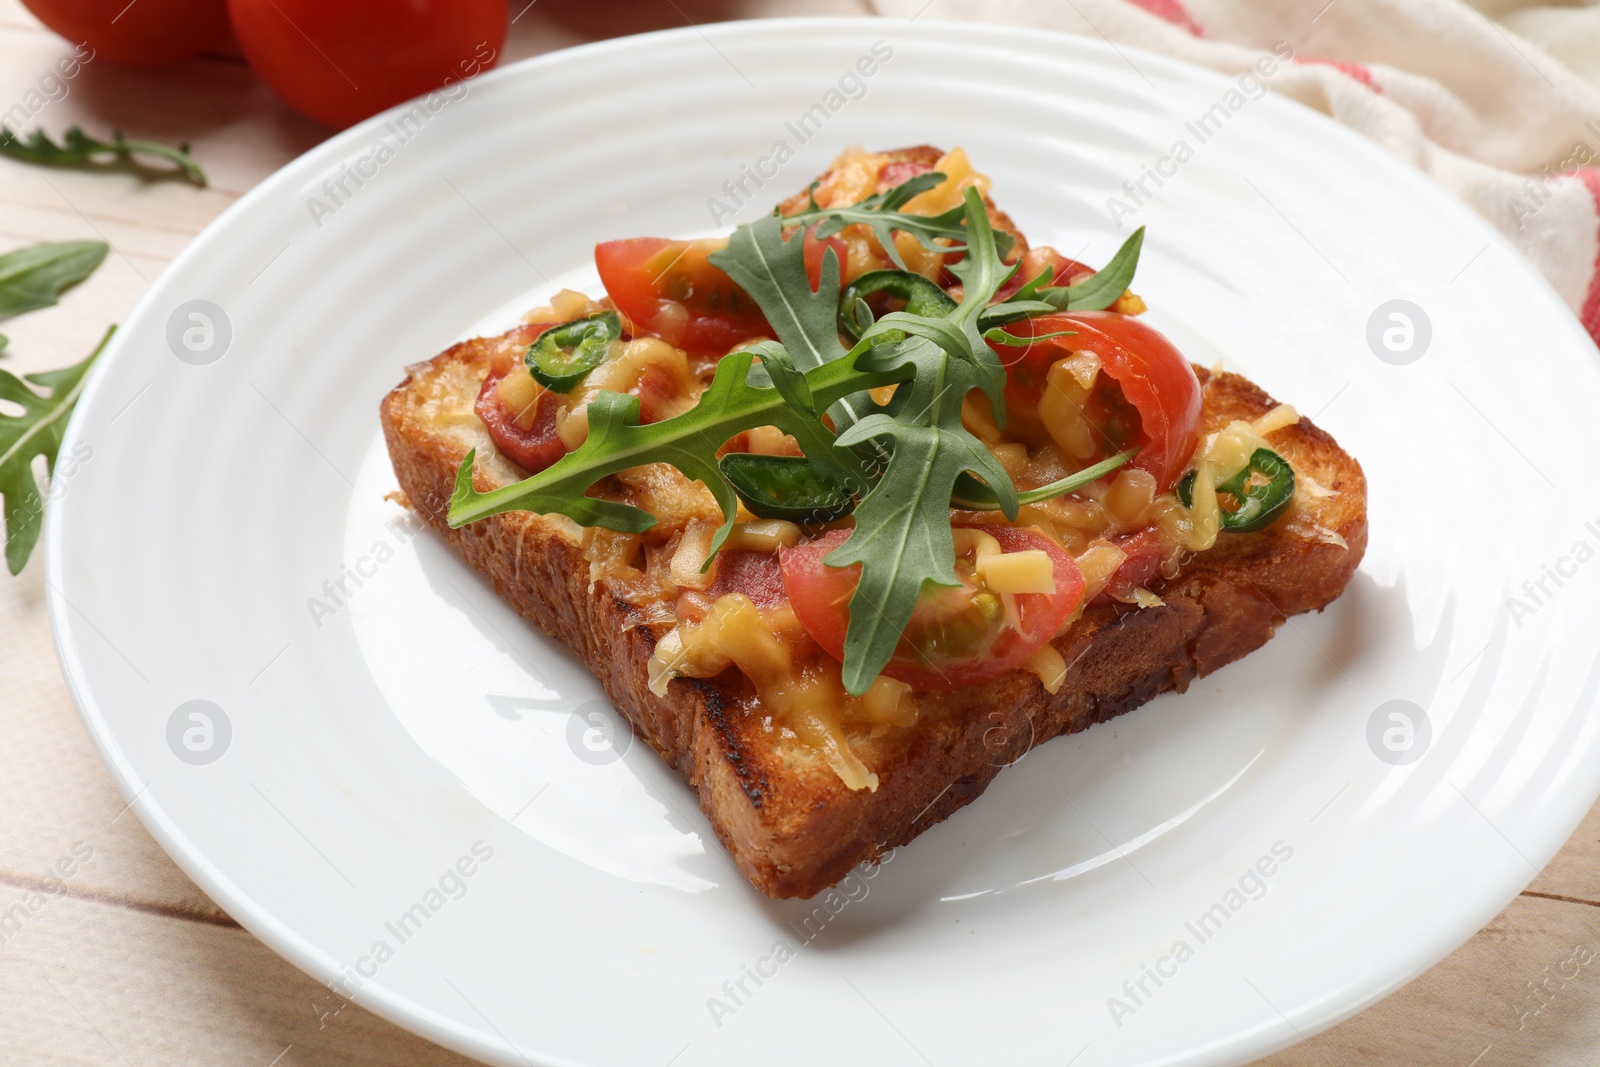 Photo of Tasty pizza toast on light wooden table